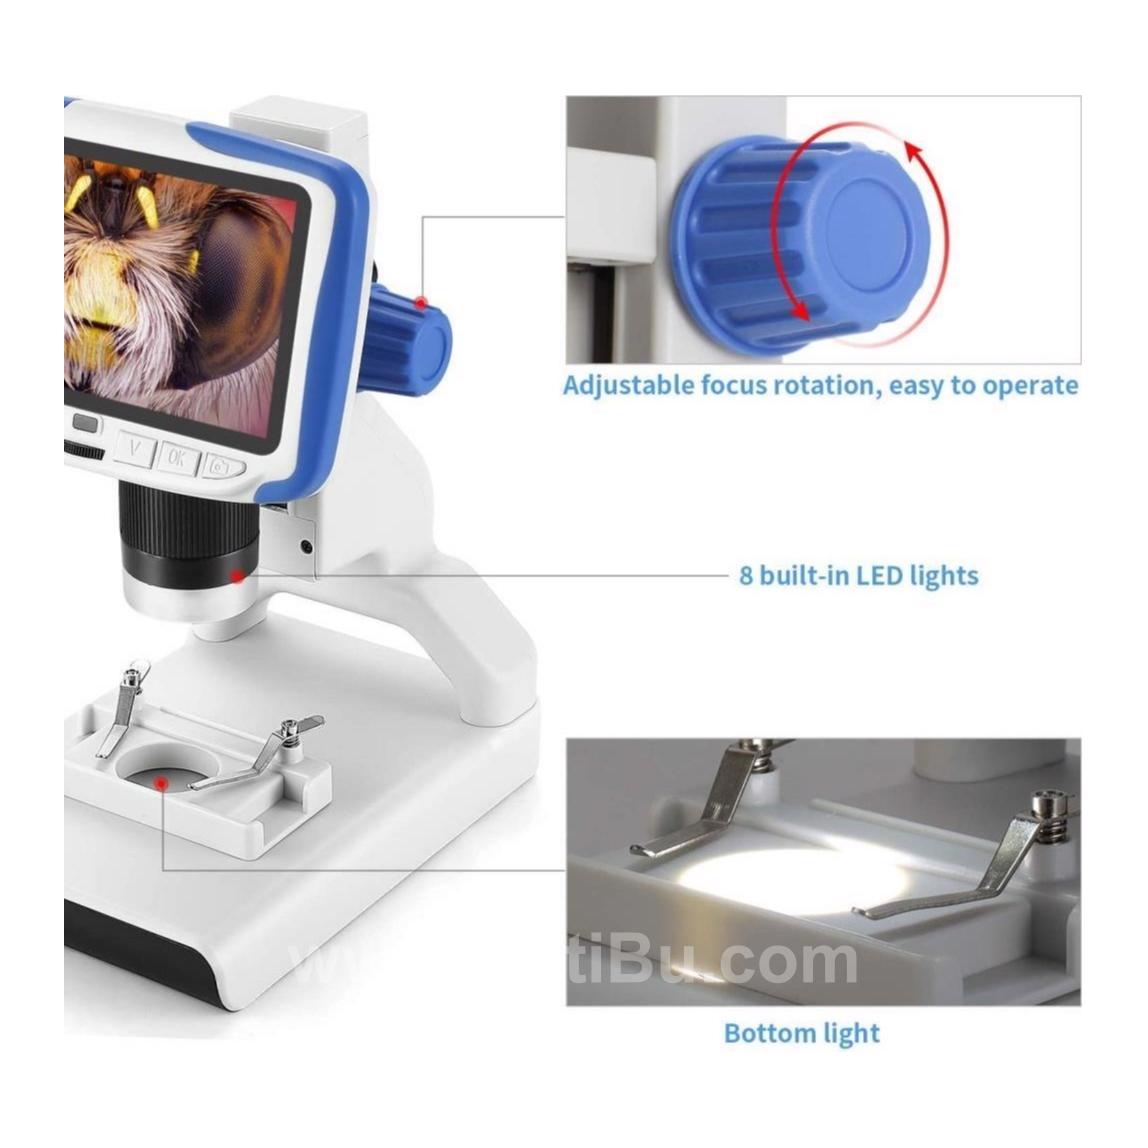 Andonstar Ad205 Usb Lcd Para Dijital Mikroskop Çocuklar Için 200X Büyütme